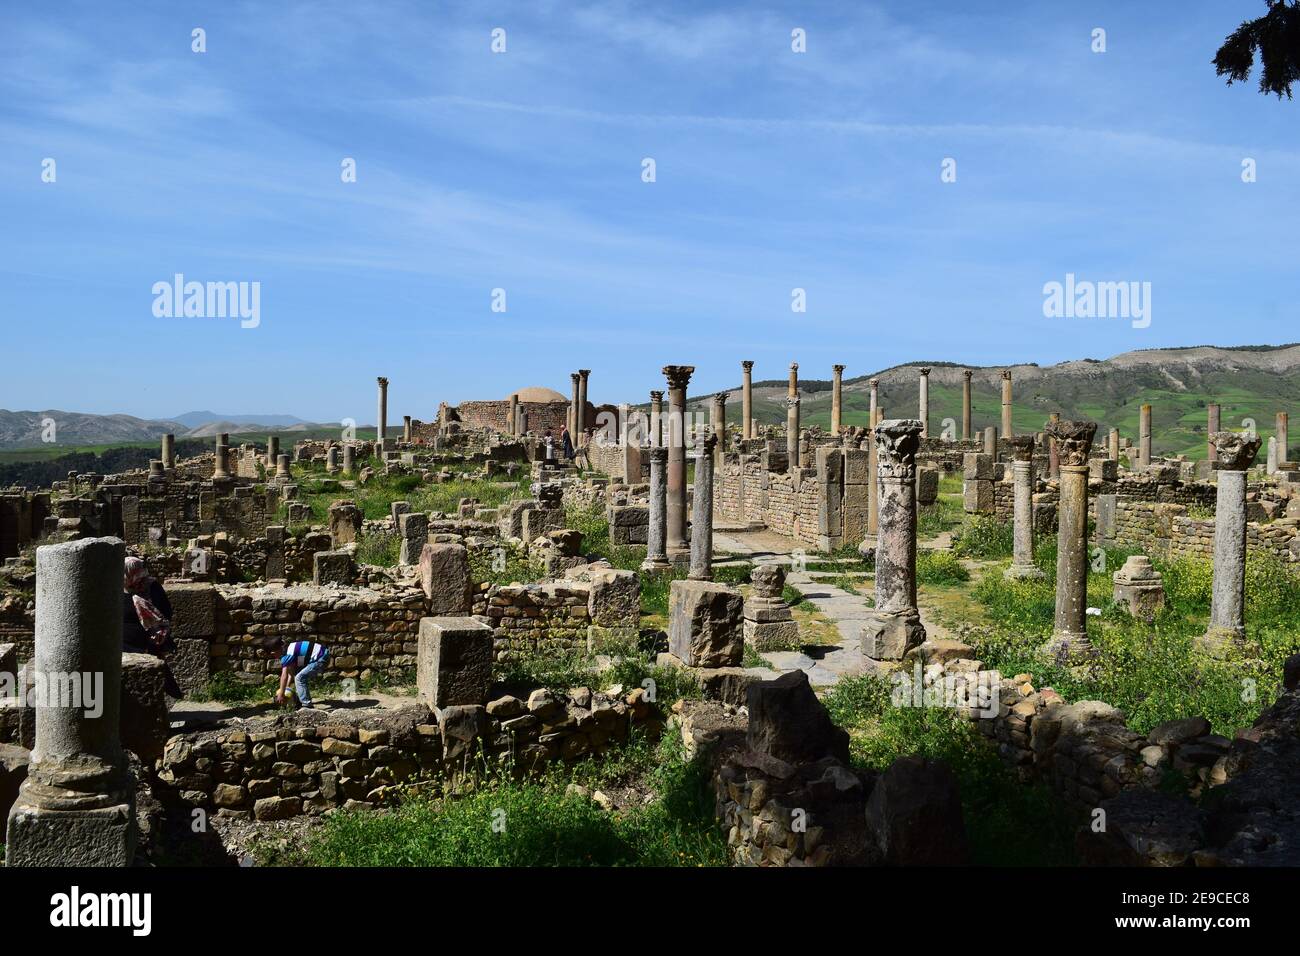 Ruines romaines de l'ancienne ville de Djemila, Setif, Algérie Banque D'Images